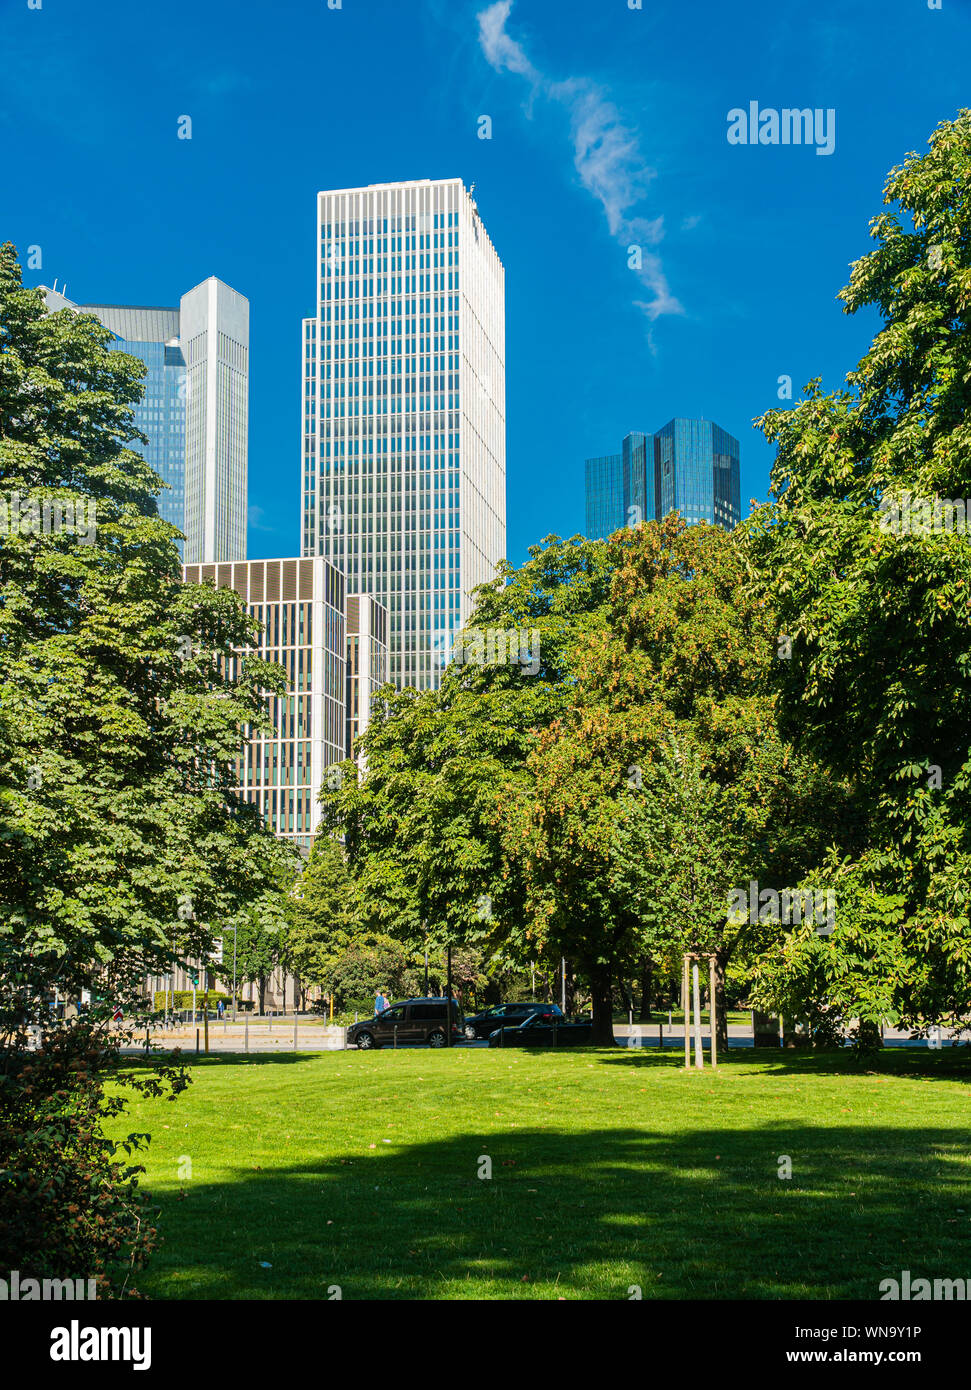 Stadtzentrum, Frankfurt am Main. Wolkenkratzer in Frankfurt am Main. Moderne Gebäude der europäische Bankenzentrum Stadt. Europas. Stockfoto